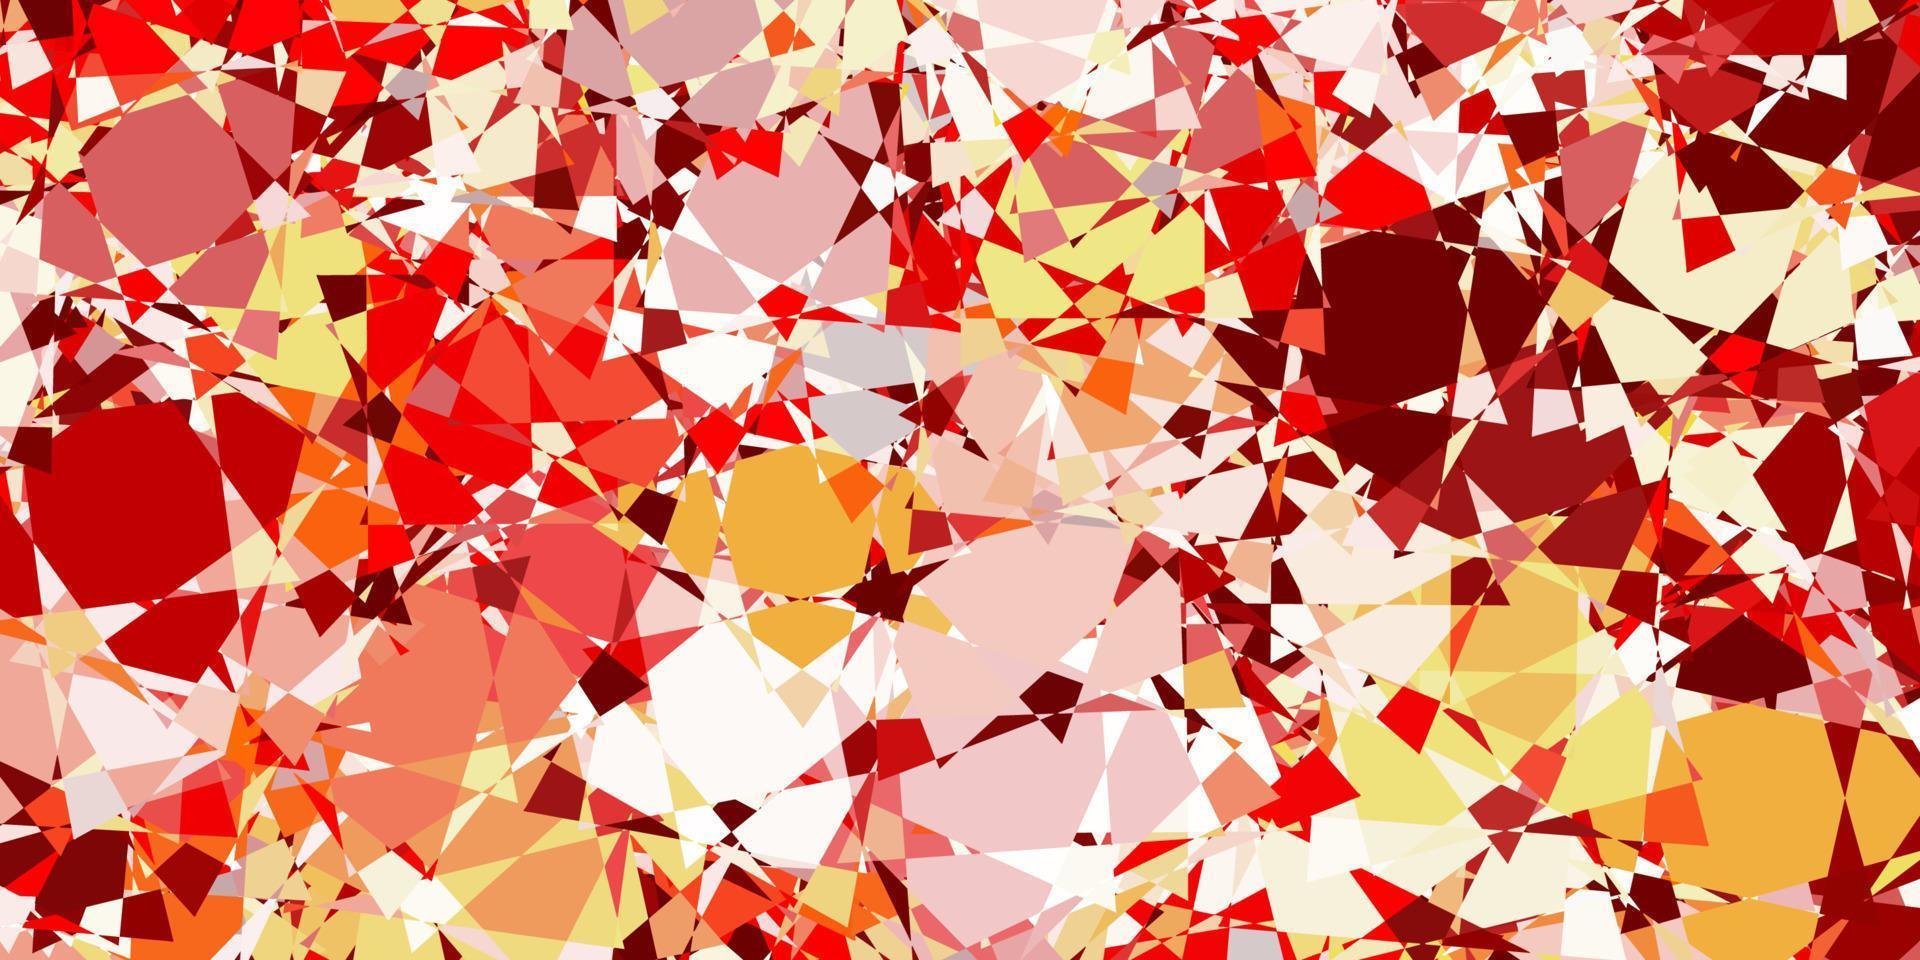 Fondo de vector rojo claro con triángulos.